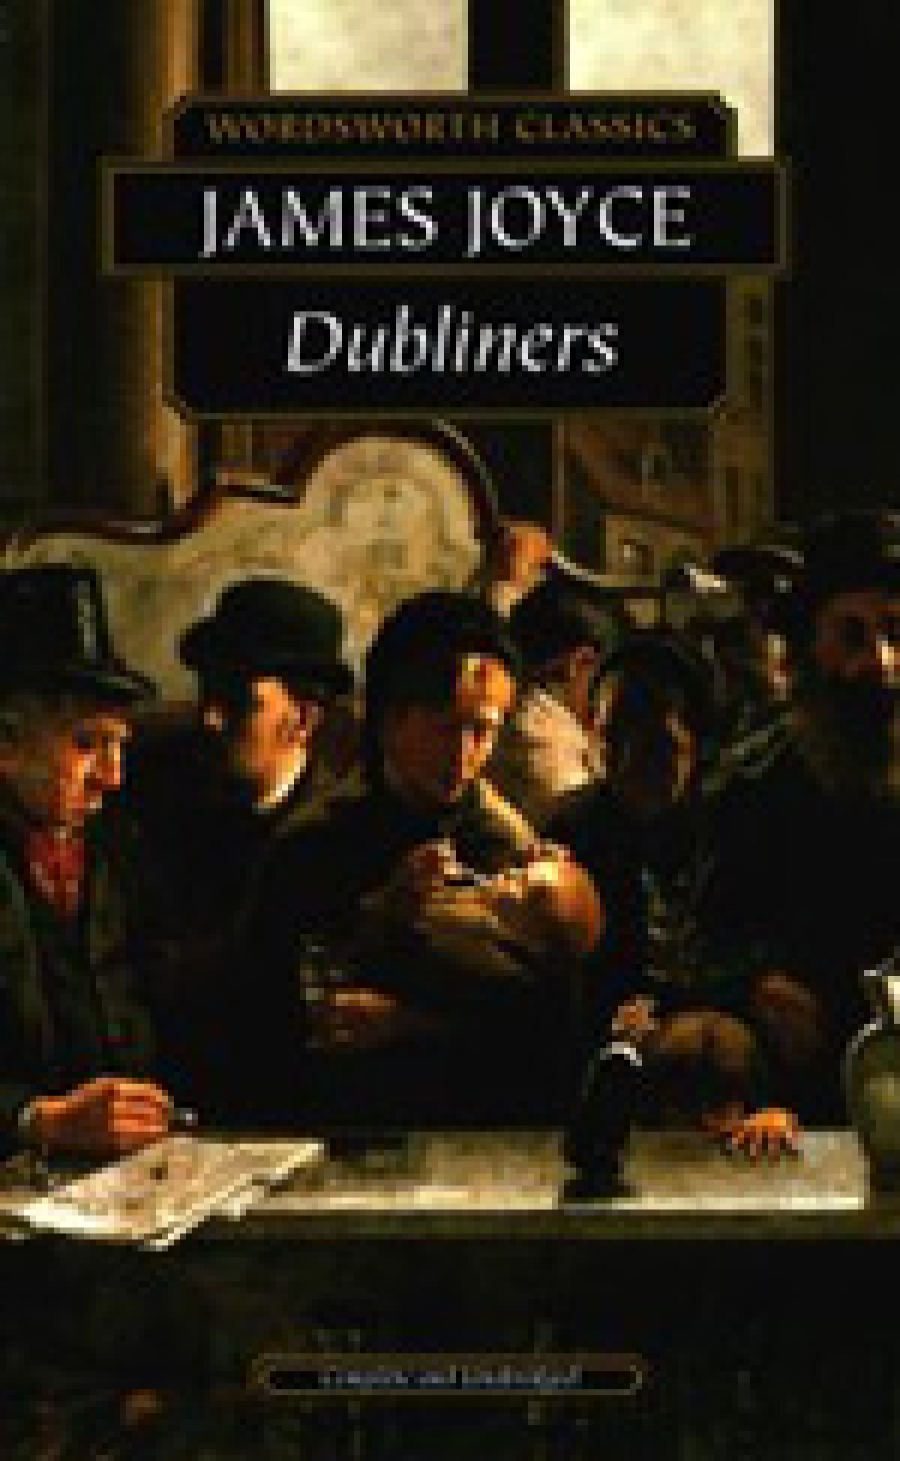 Joyce J. Dubliners 